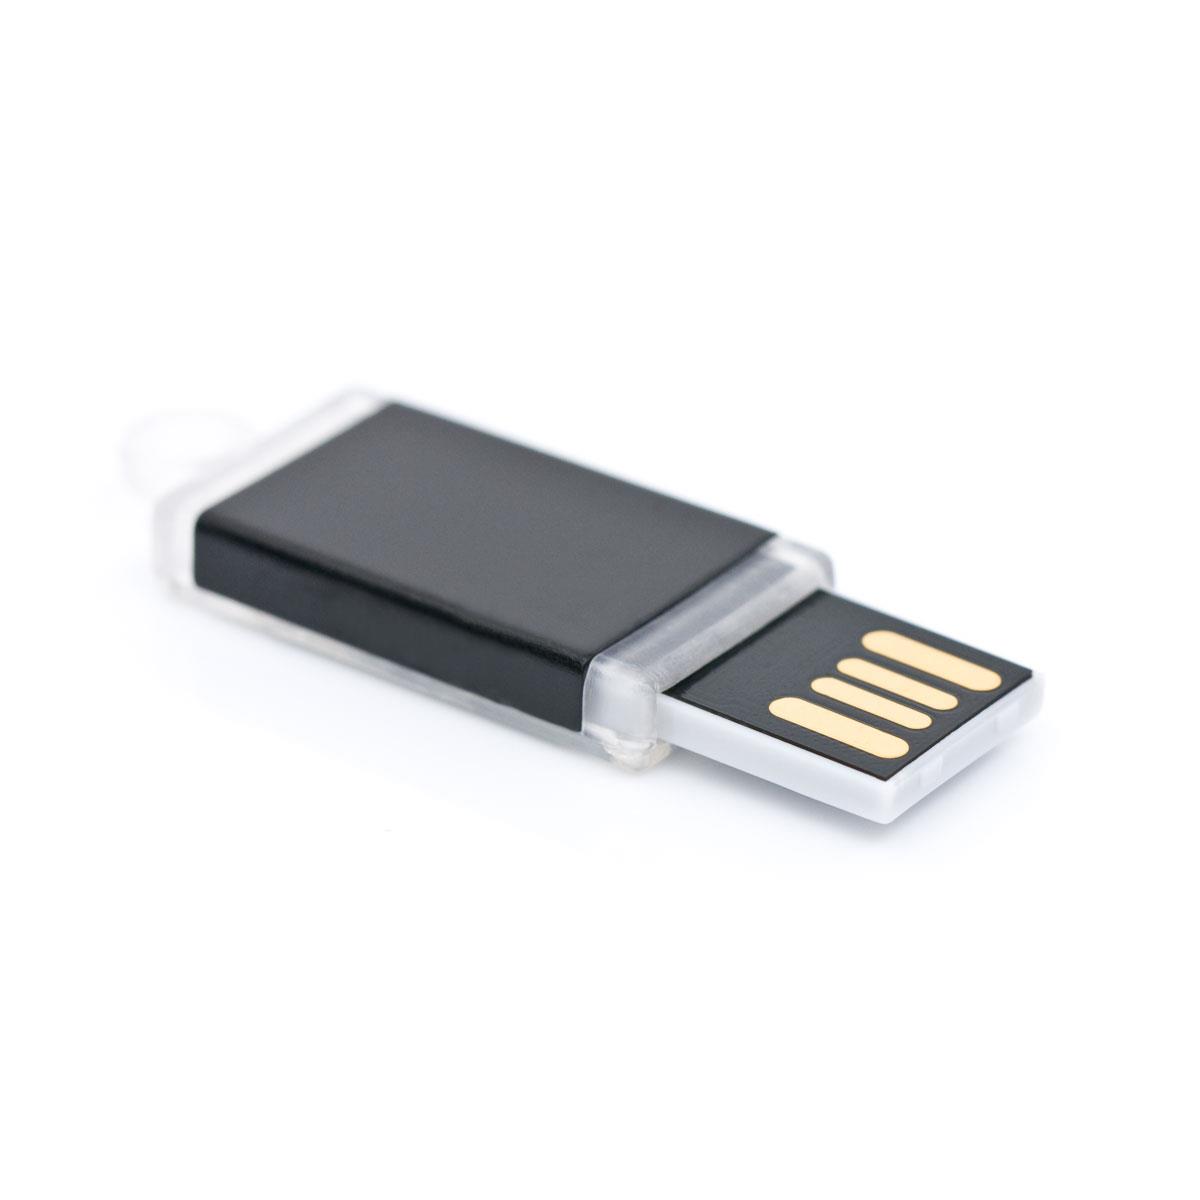 USB Stick Skid 1 GB